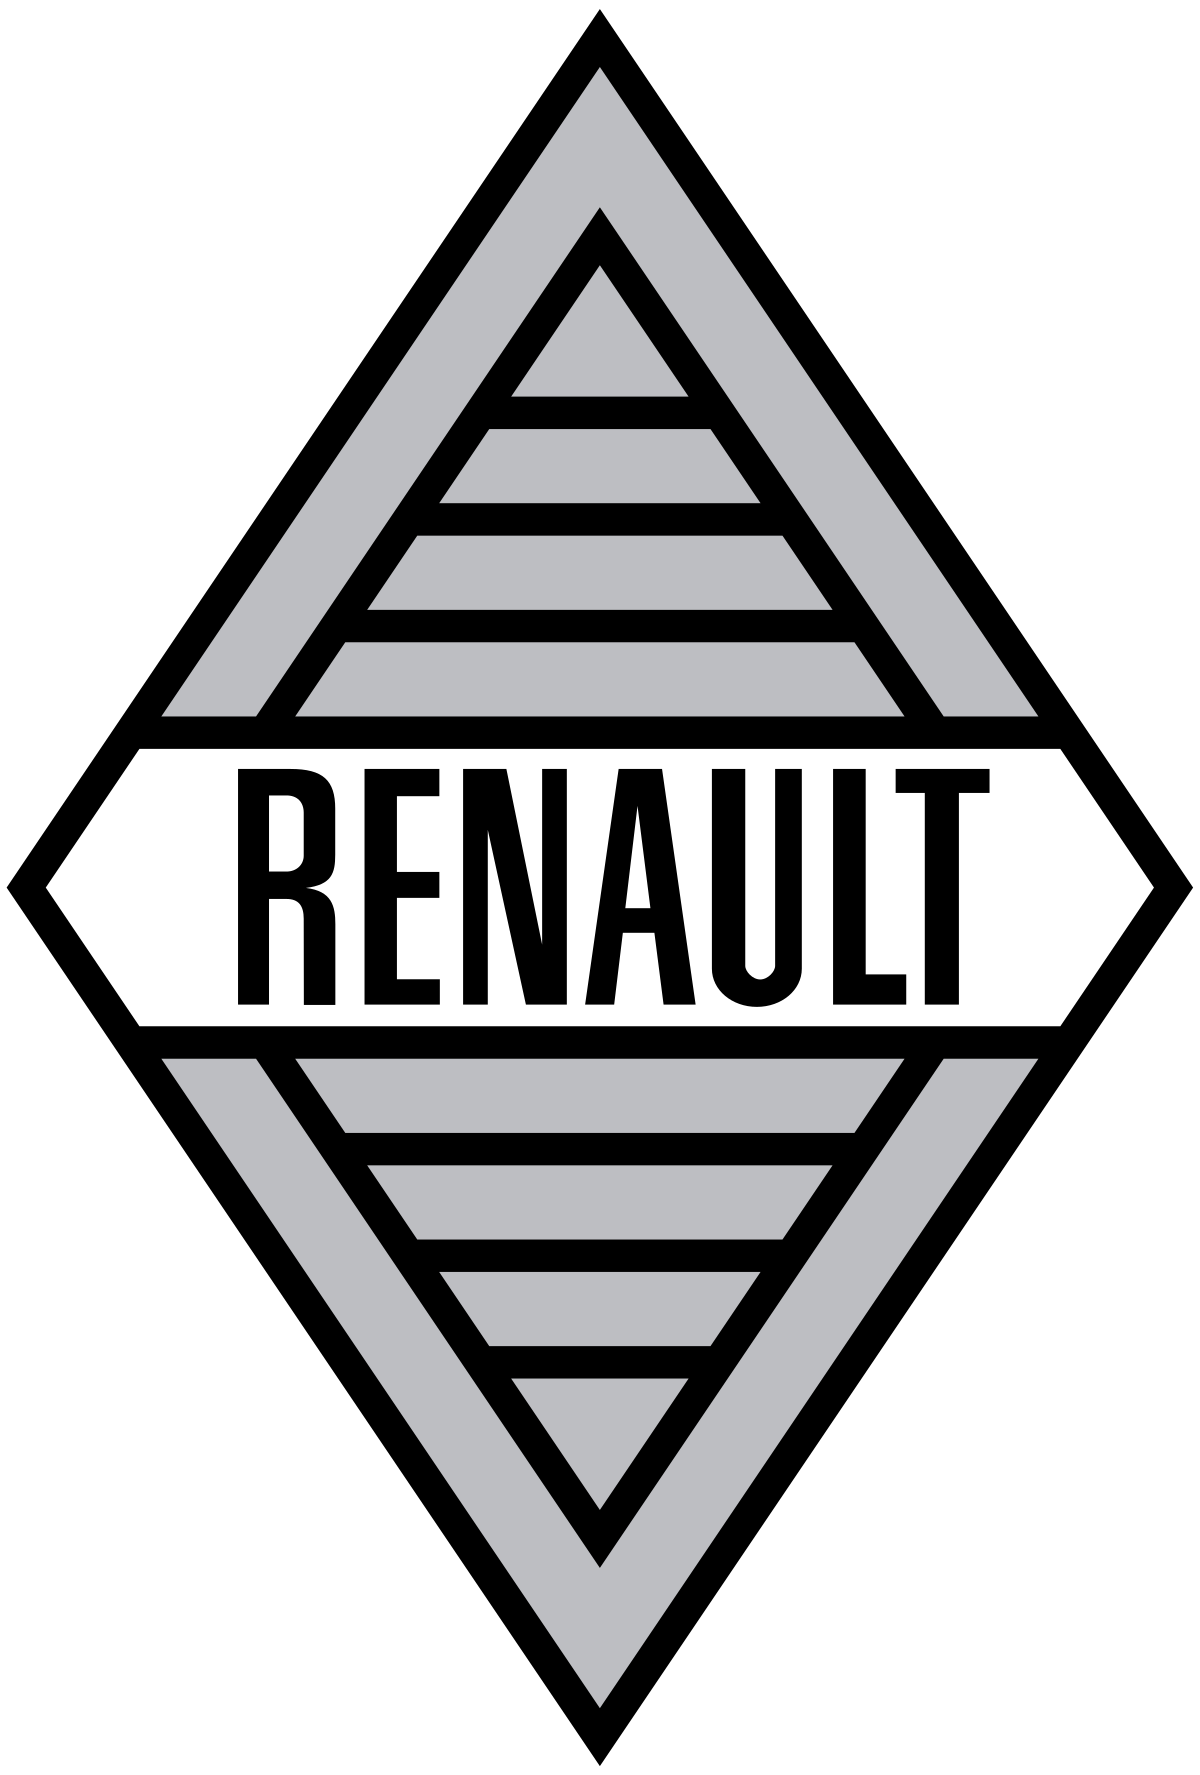 File:Renault-Logo-1959.svg - Wikipedia